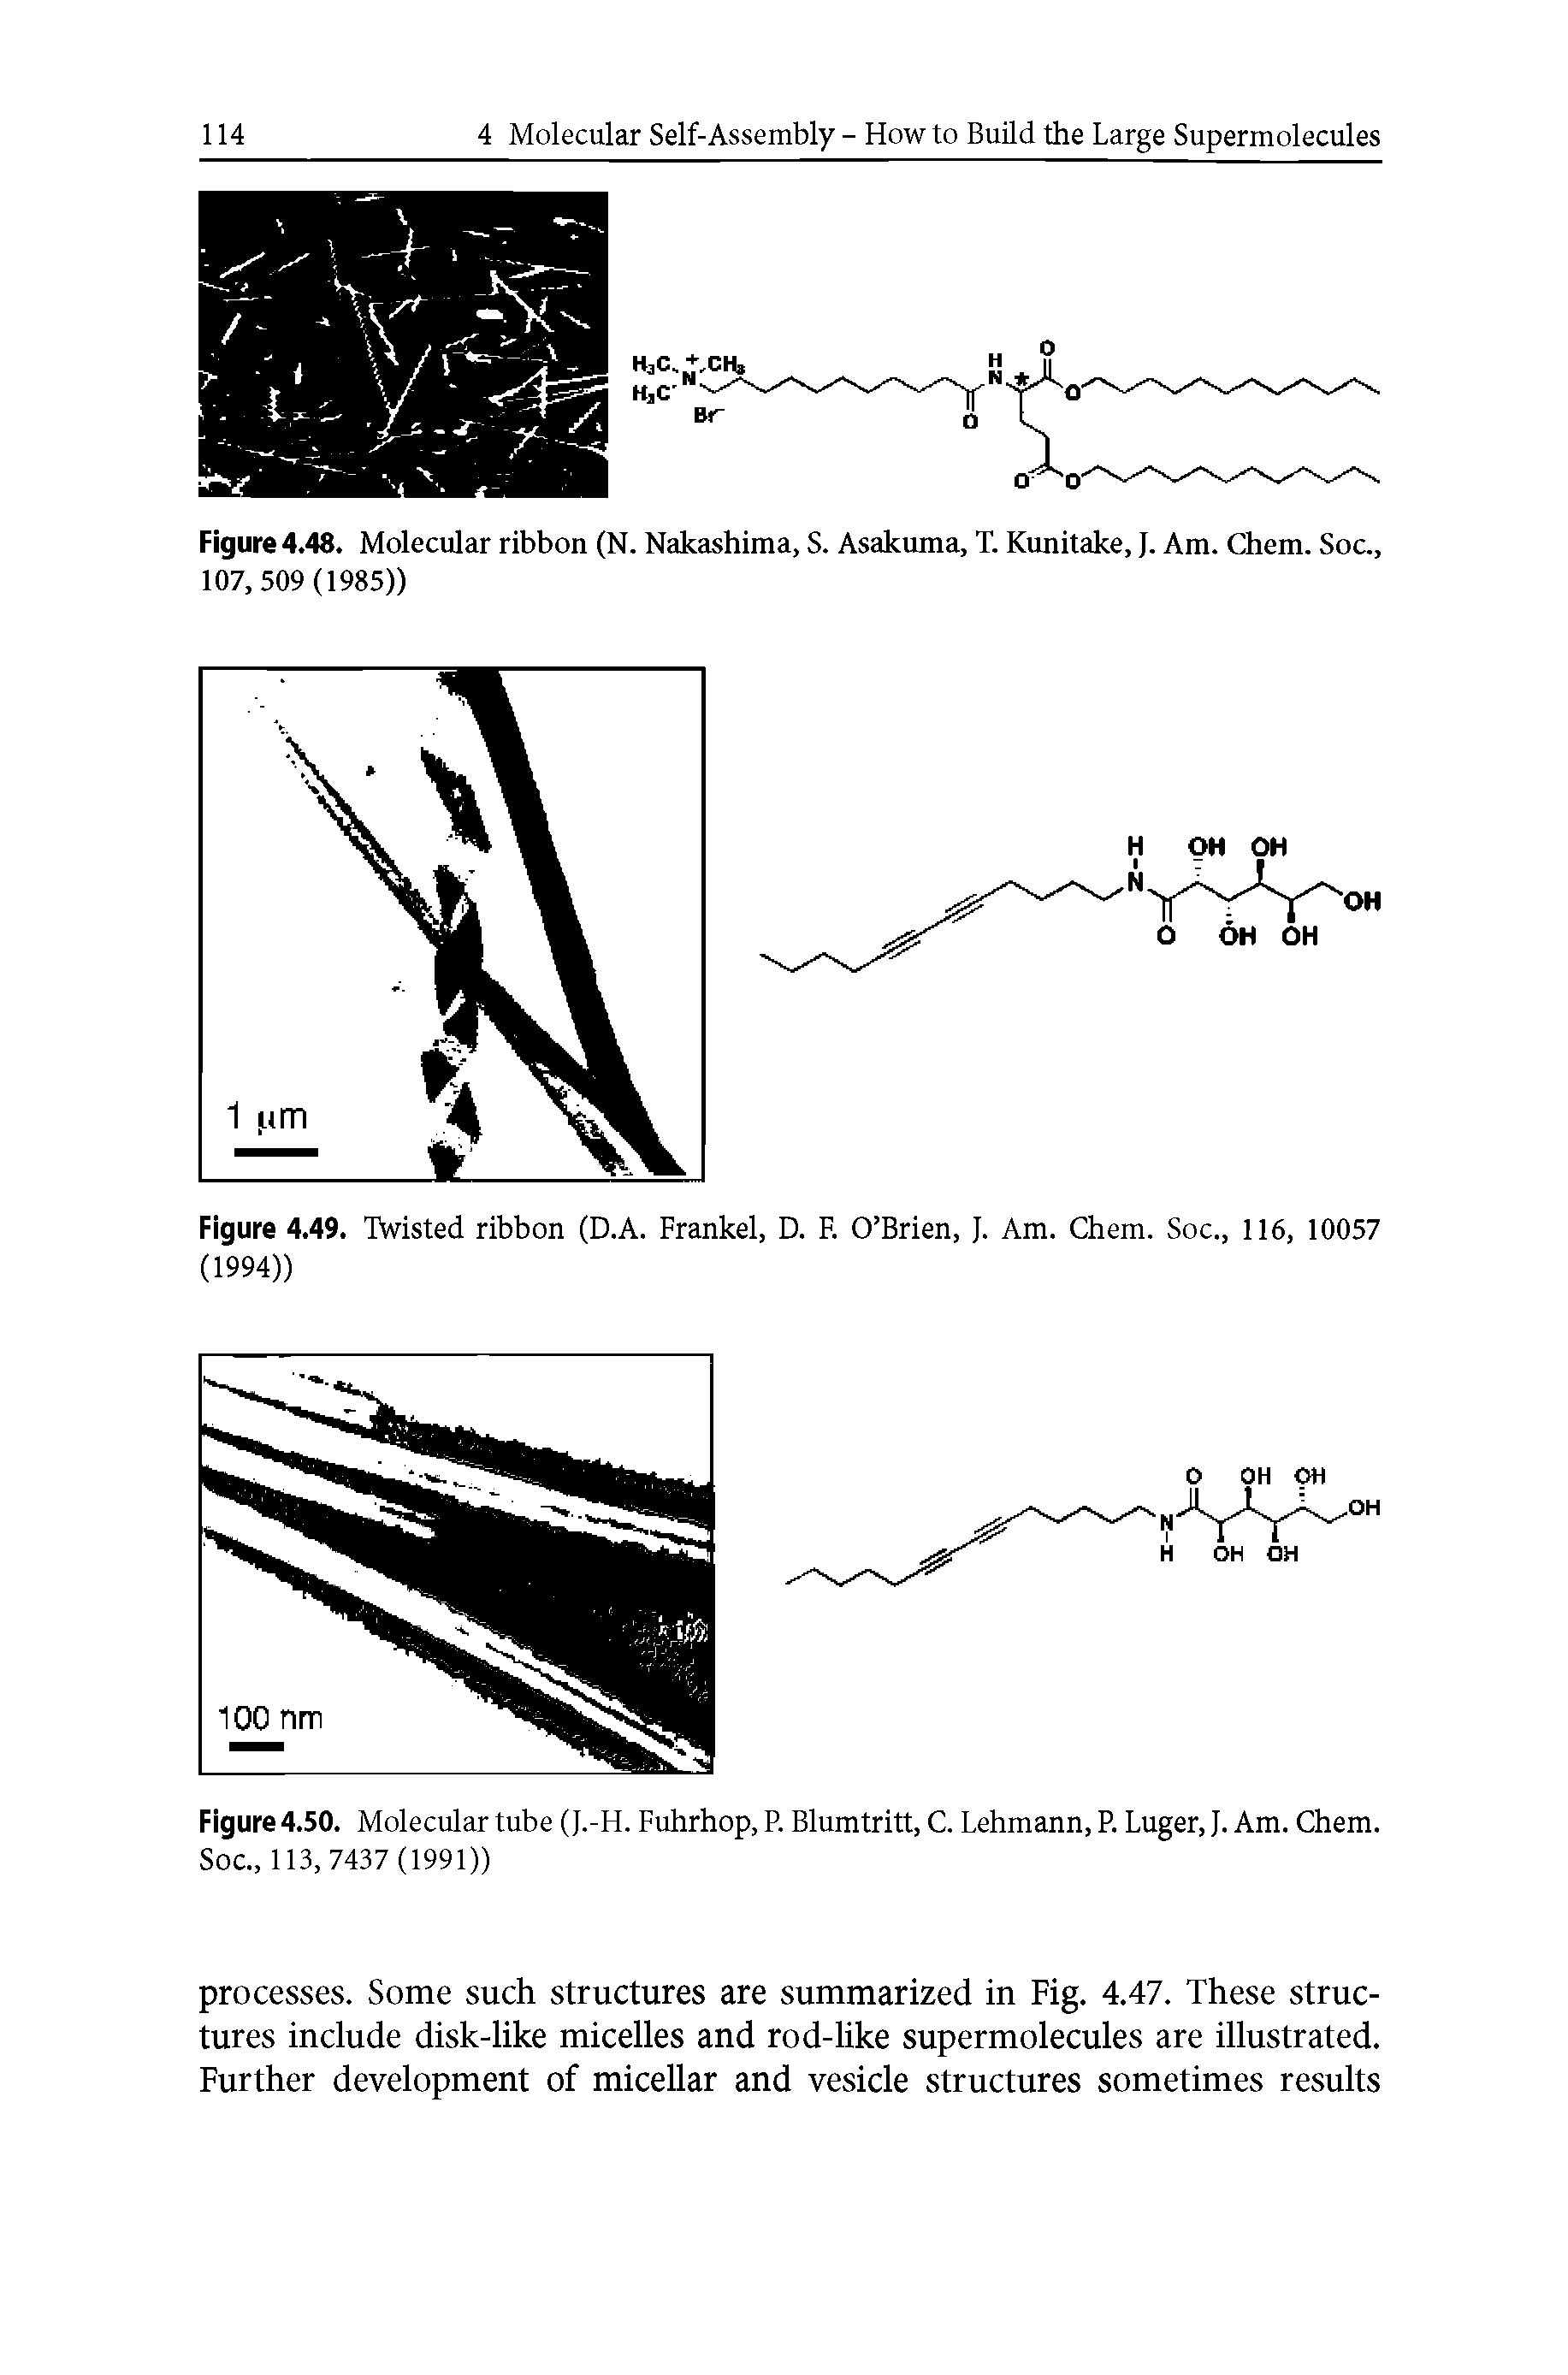 Figure 4.48. Molecular ribbon (N. Nakashima, S. Asakuma, T. Kunitake, J. Am. Chem. Soc., 107,509(1985))...